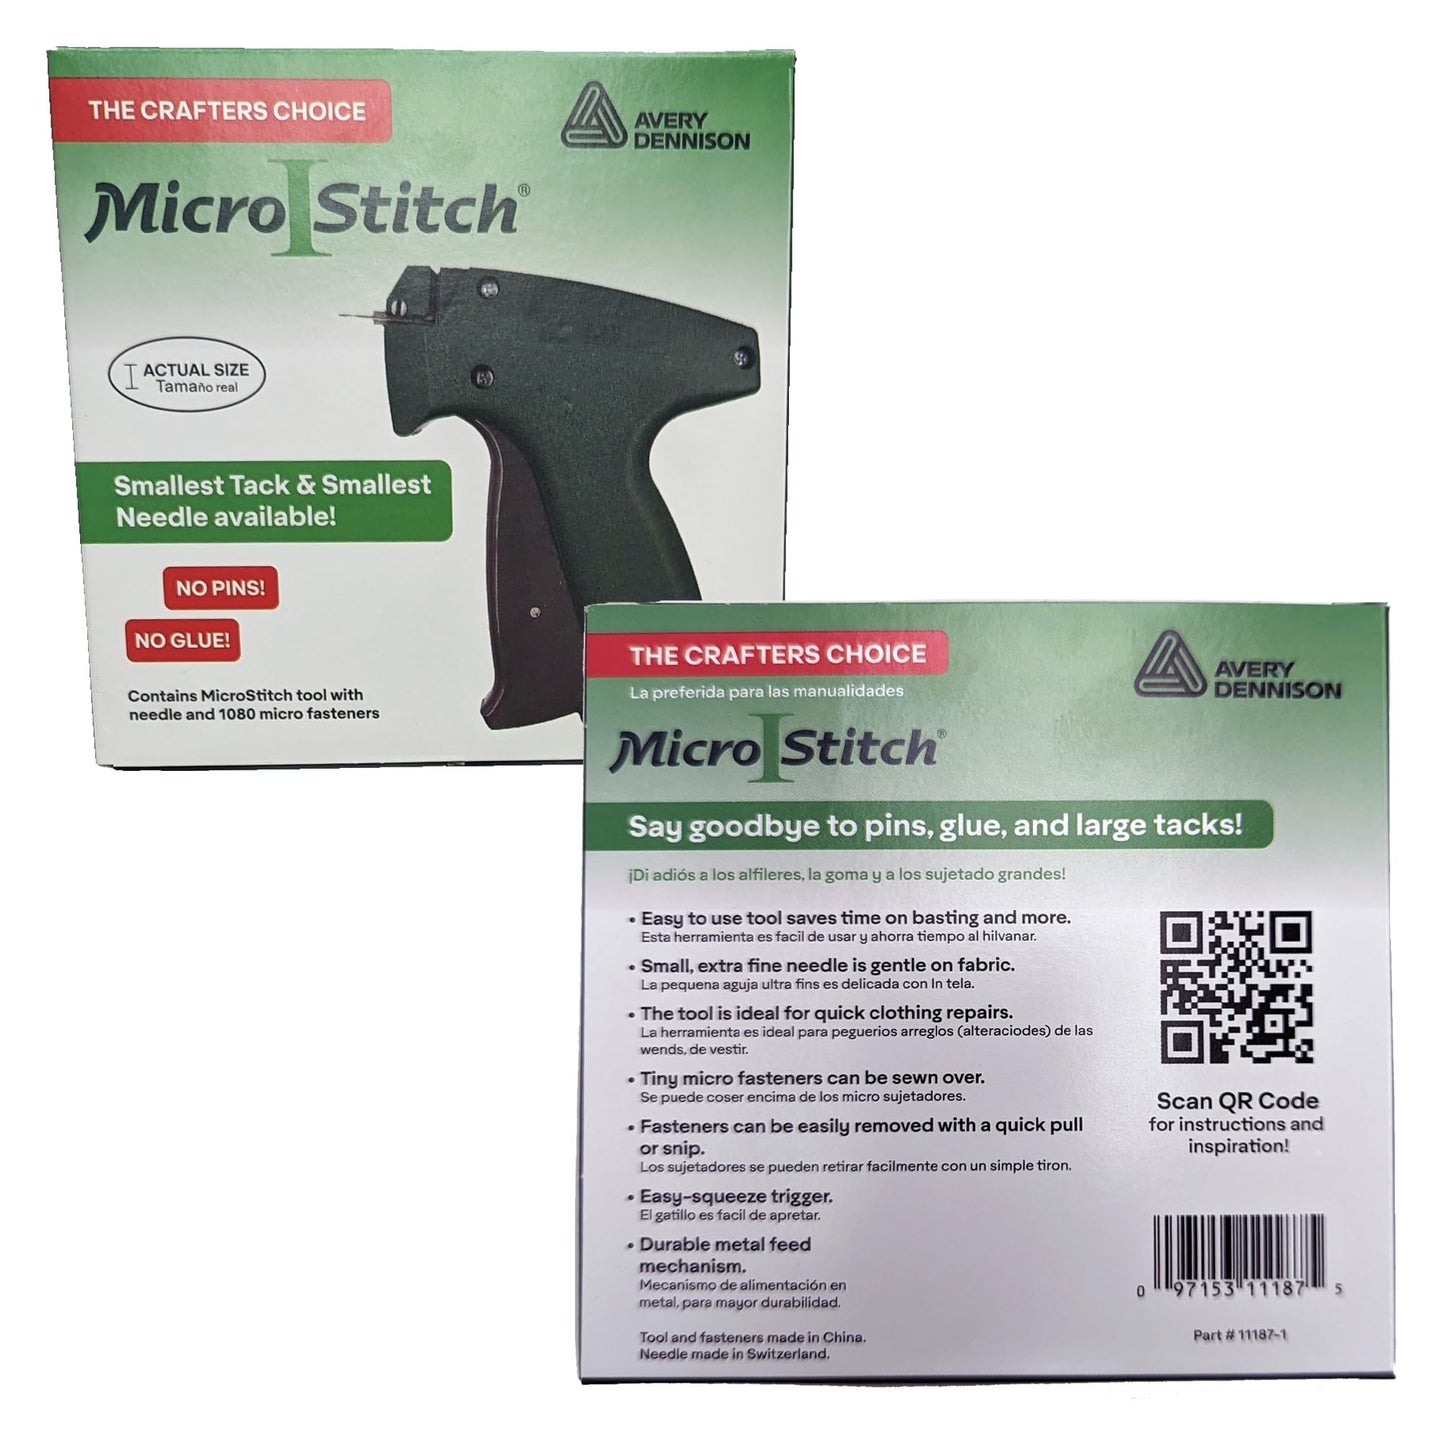 PRODUCTO 360 MicroStitch El kit de pistola de etiquetado original: el kit de inicio incluye la herramienta de etiquetado de micropuntadas, 1 aguja, 600 sujetadores blancos y 480 sujetadores negros